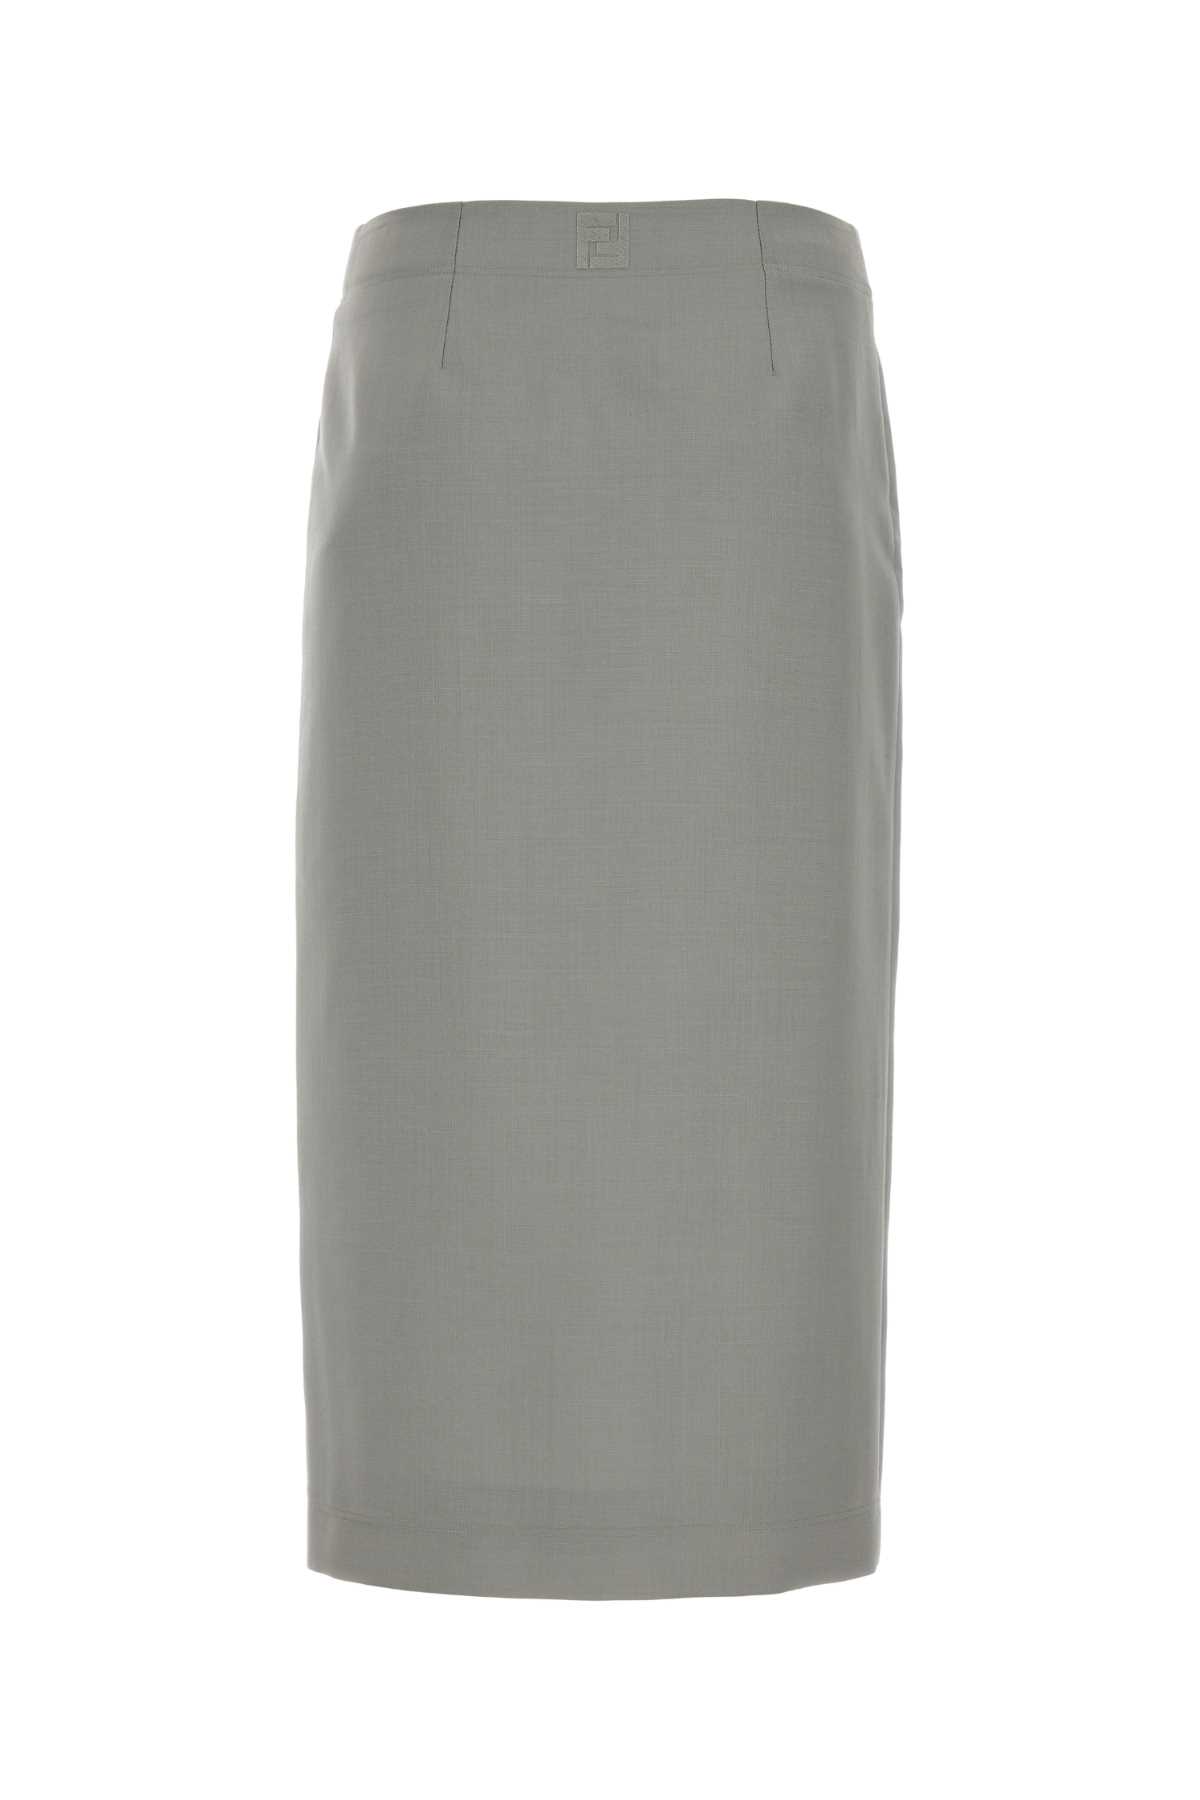 Fendi Light Grey Mohair Blend Skirt In Shadow